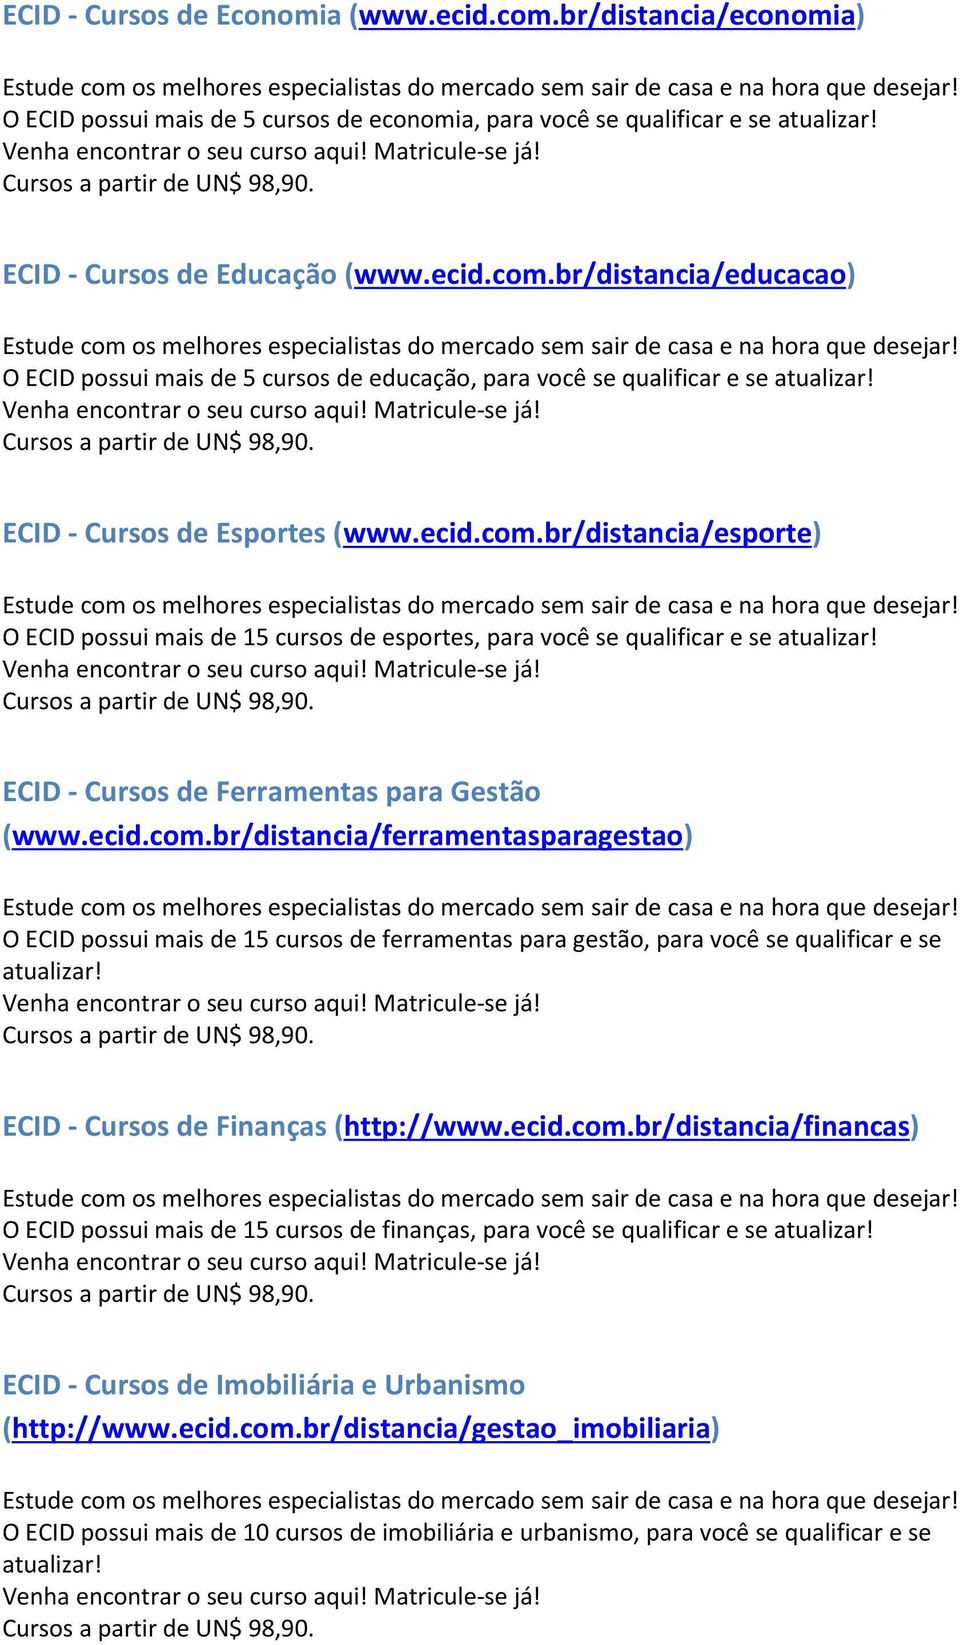 ECID - Cursos de Finanças (http://www.ecid.com.br/distancia/financas) O ECID possui mais de 15 cursos de finanças, para você se qualificar e se atualizar!